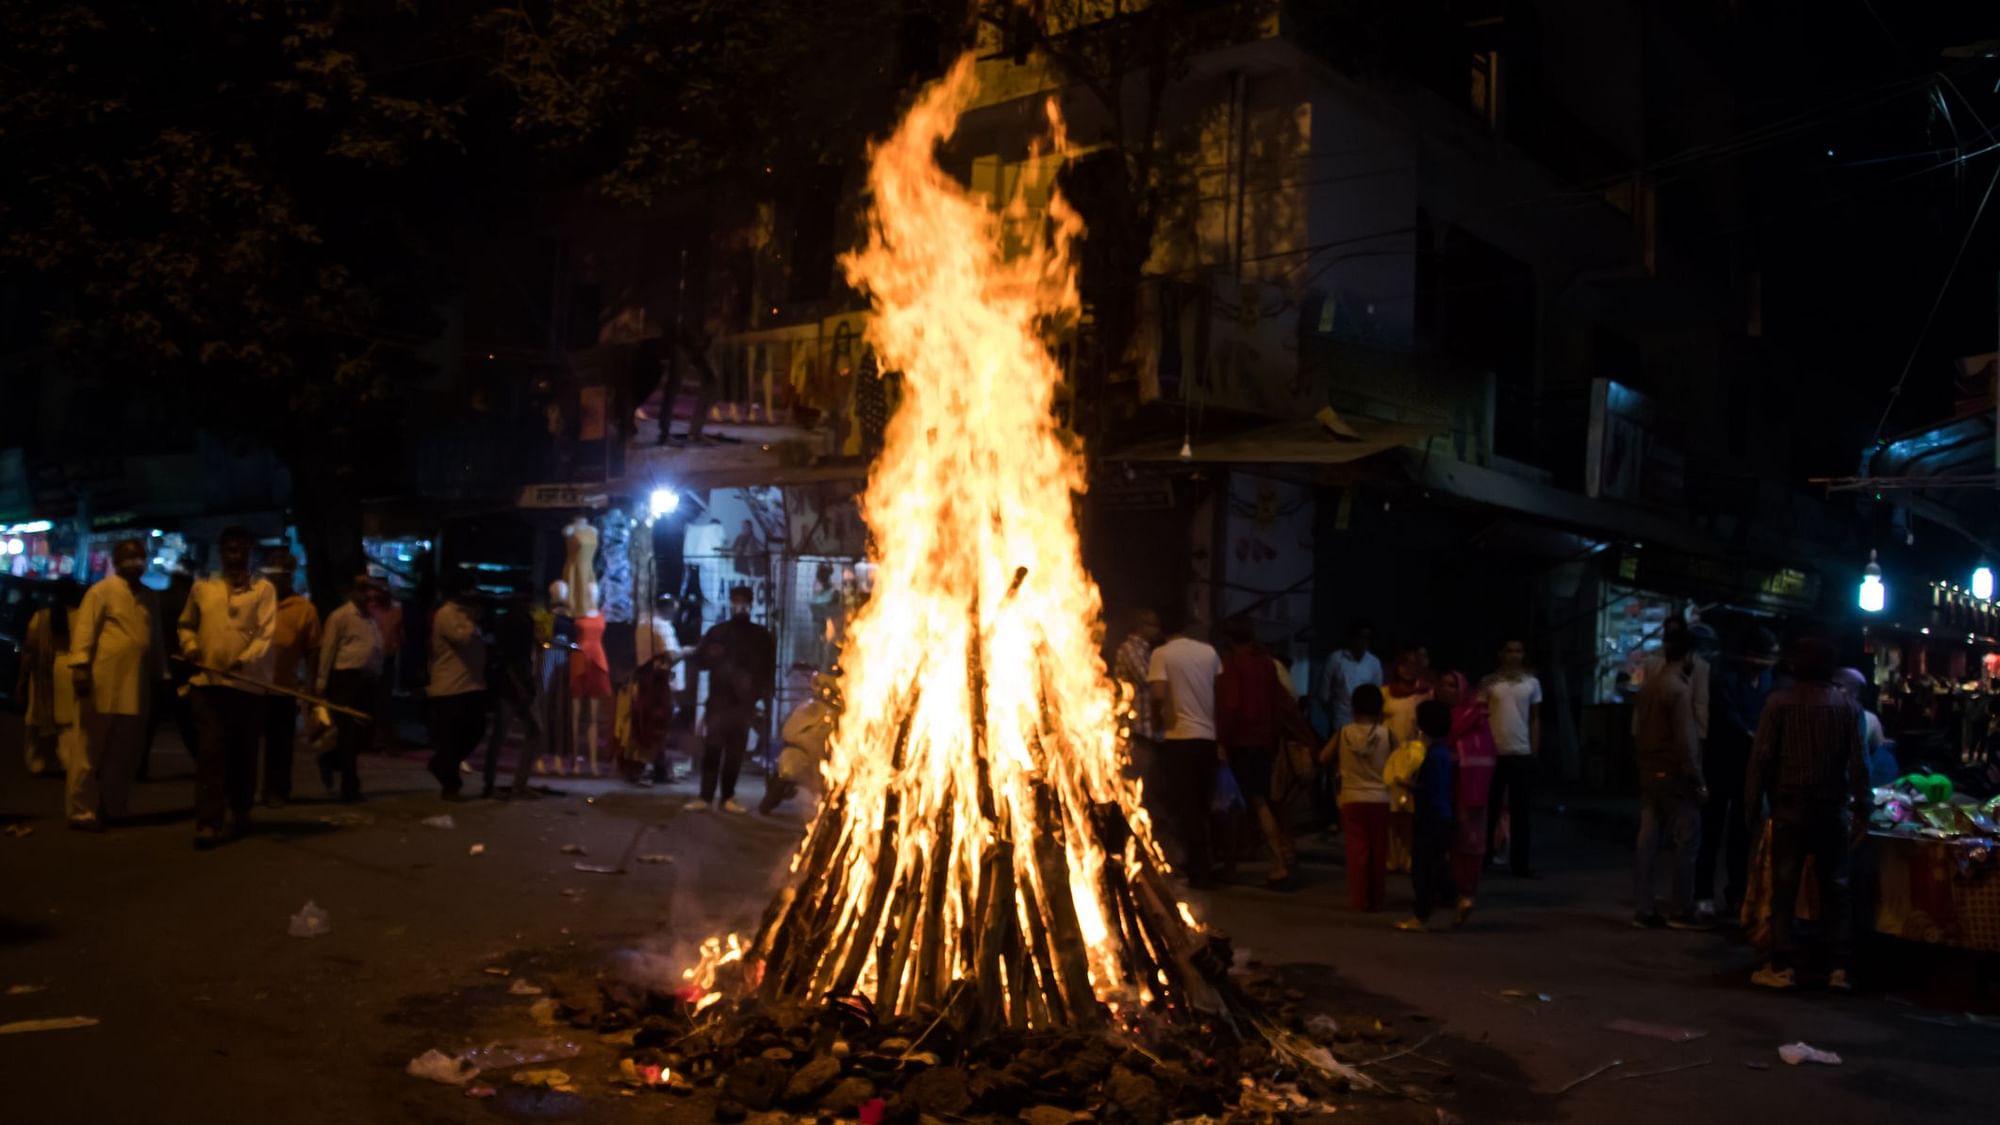 Kab Hai Holi 2020: जानिए इस साल कब है होली?